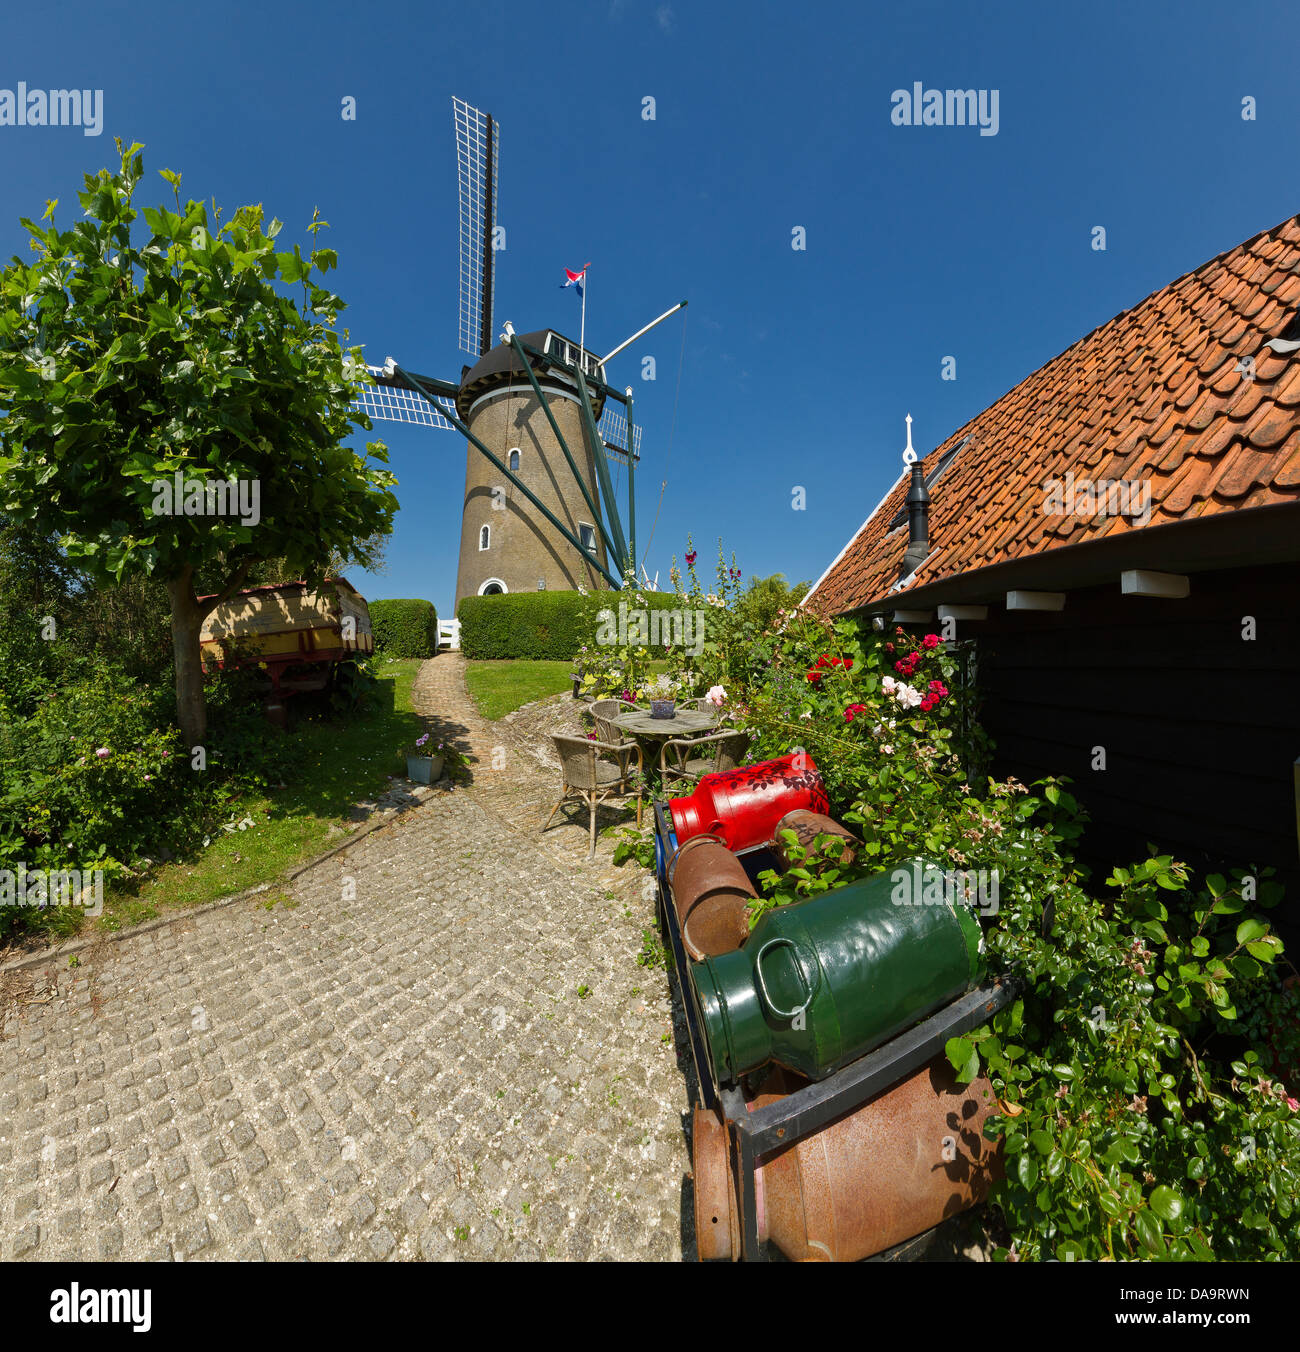 Netherlands, Holland, Europe, Brouwershaven, Windmill, De Haan, flowers, summer, garden, Stock Photo